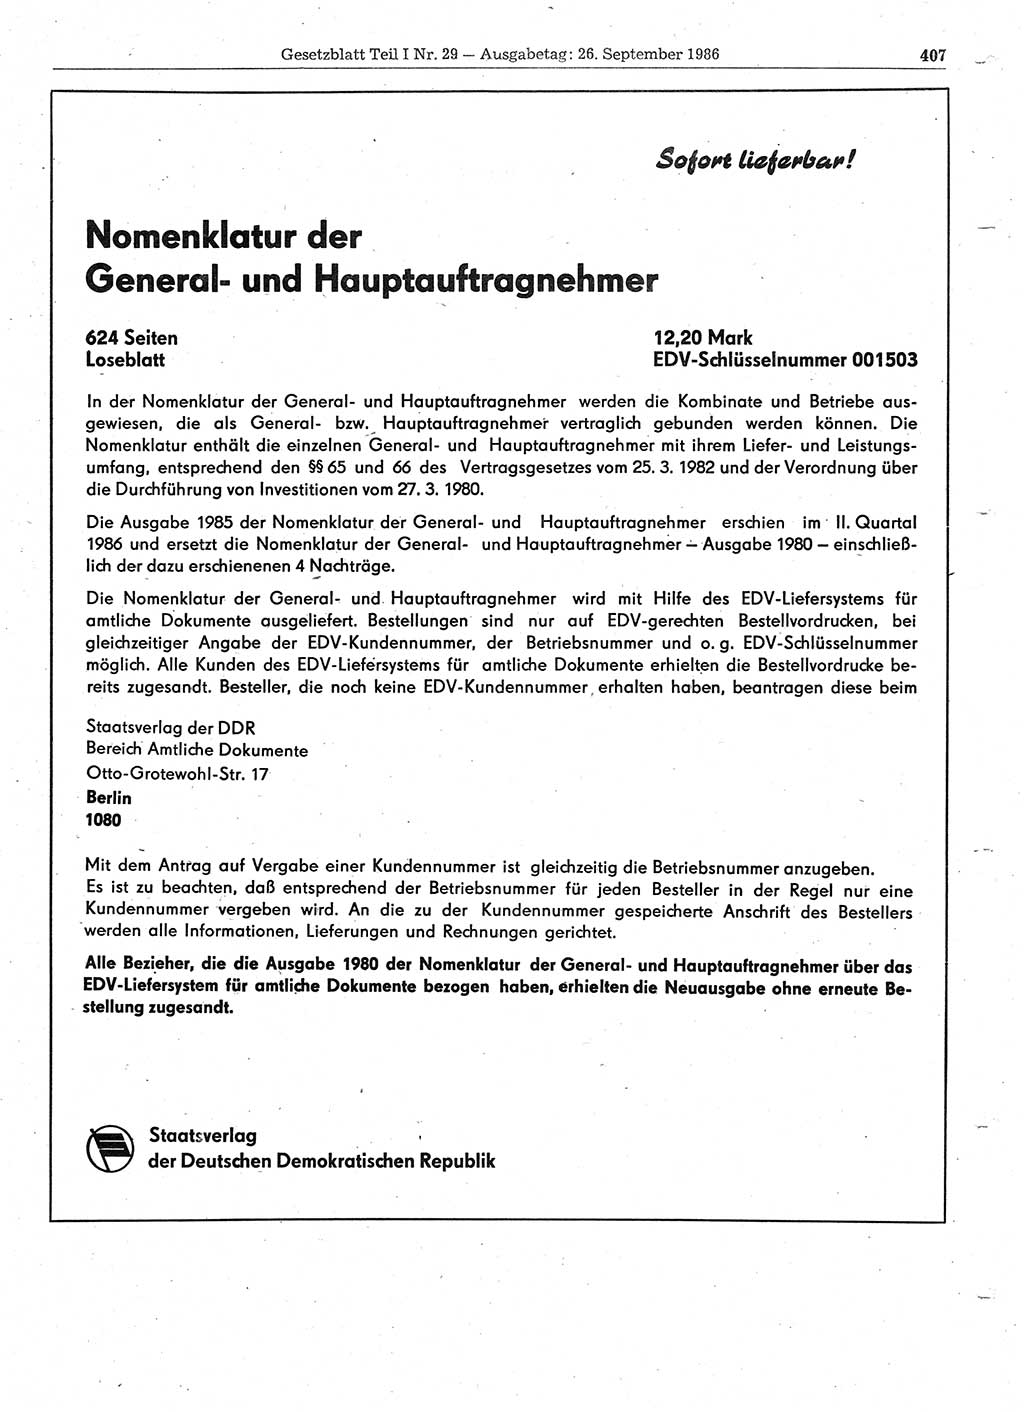 Gesetzblatt (GBl.) der Deutschen Demokratischen Republik (DDR) Teil Ⅰ 1986, Seite 407 (GBl. DDR Ⅰ 1986, S. 407)